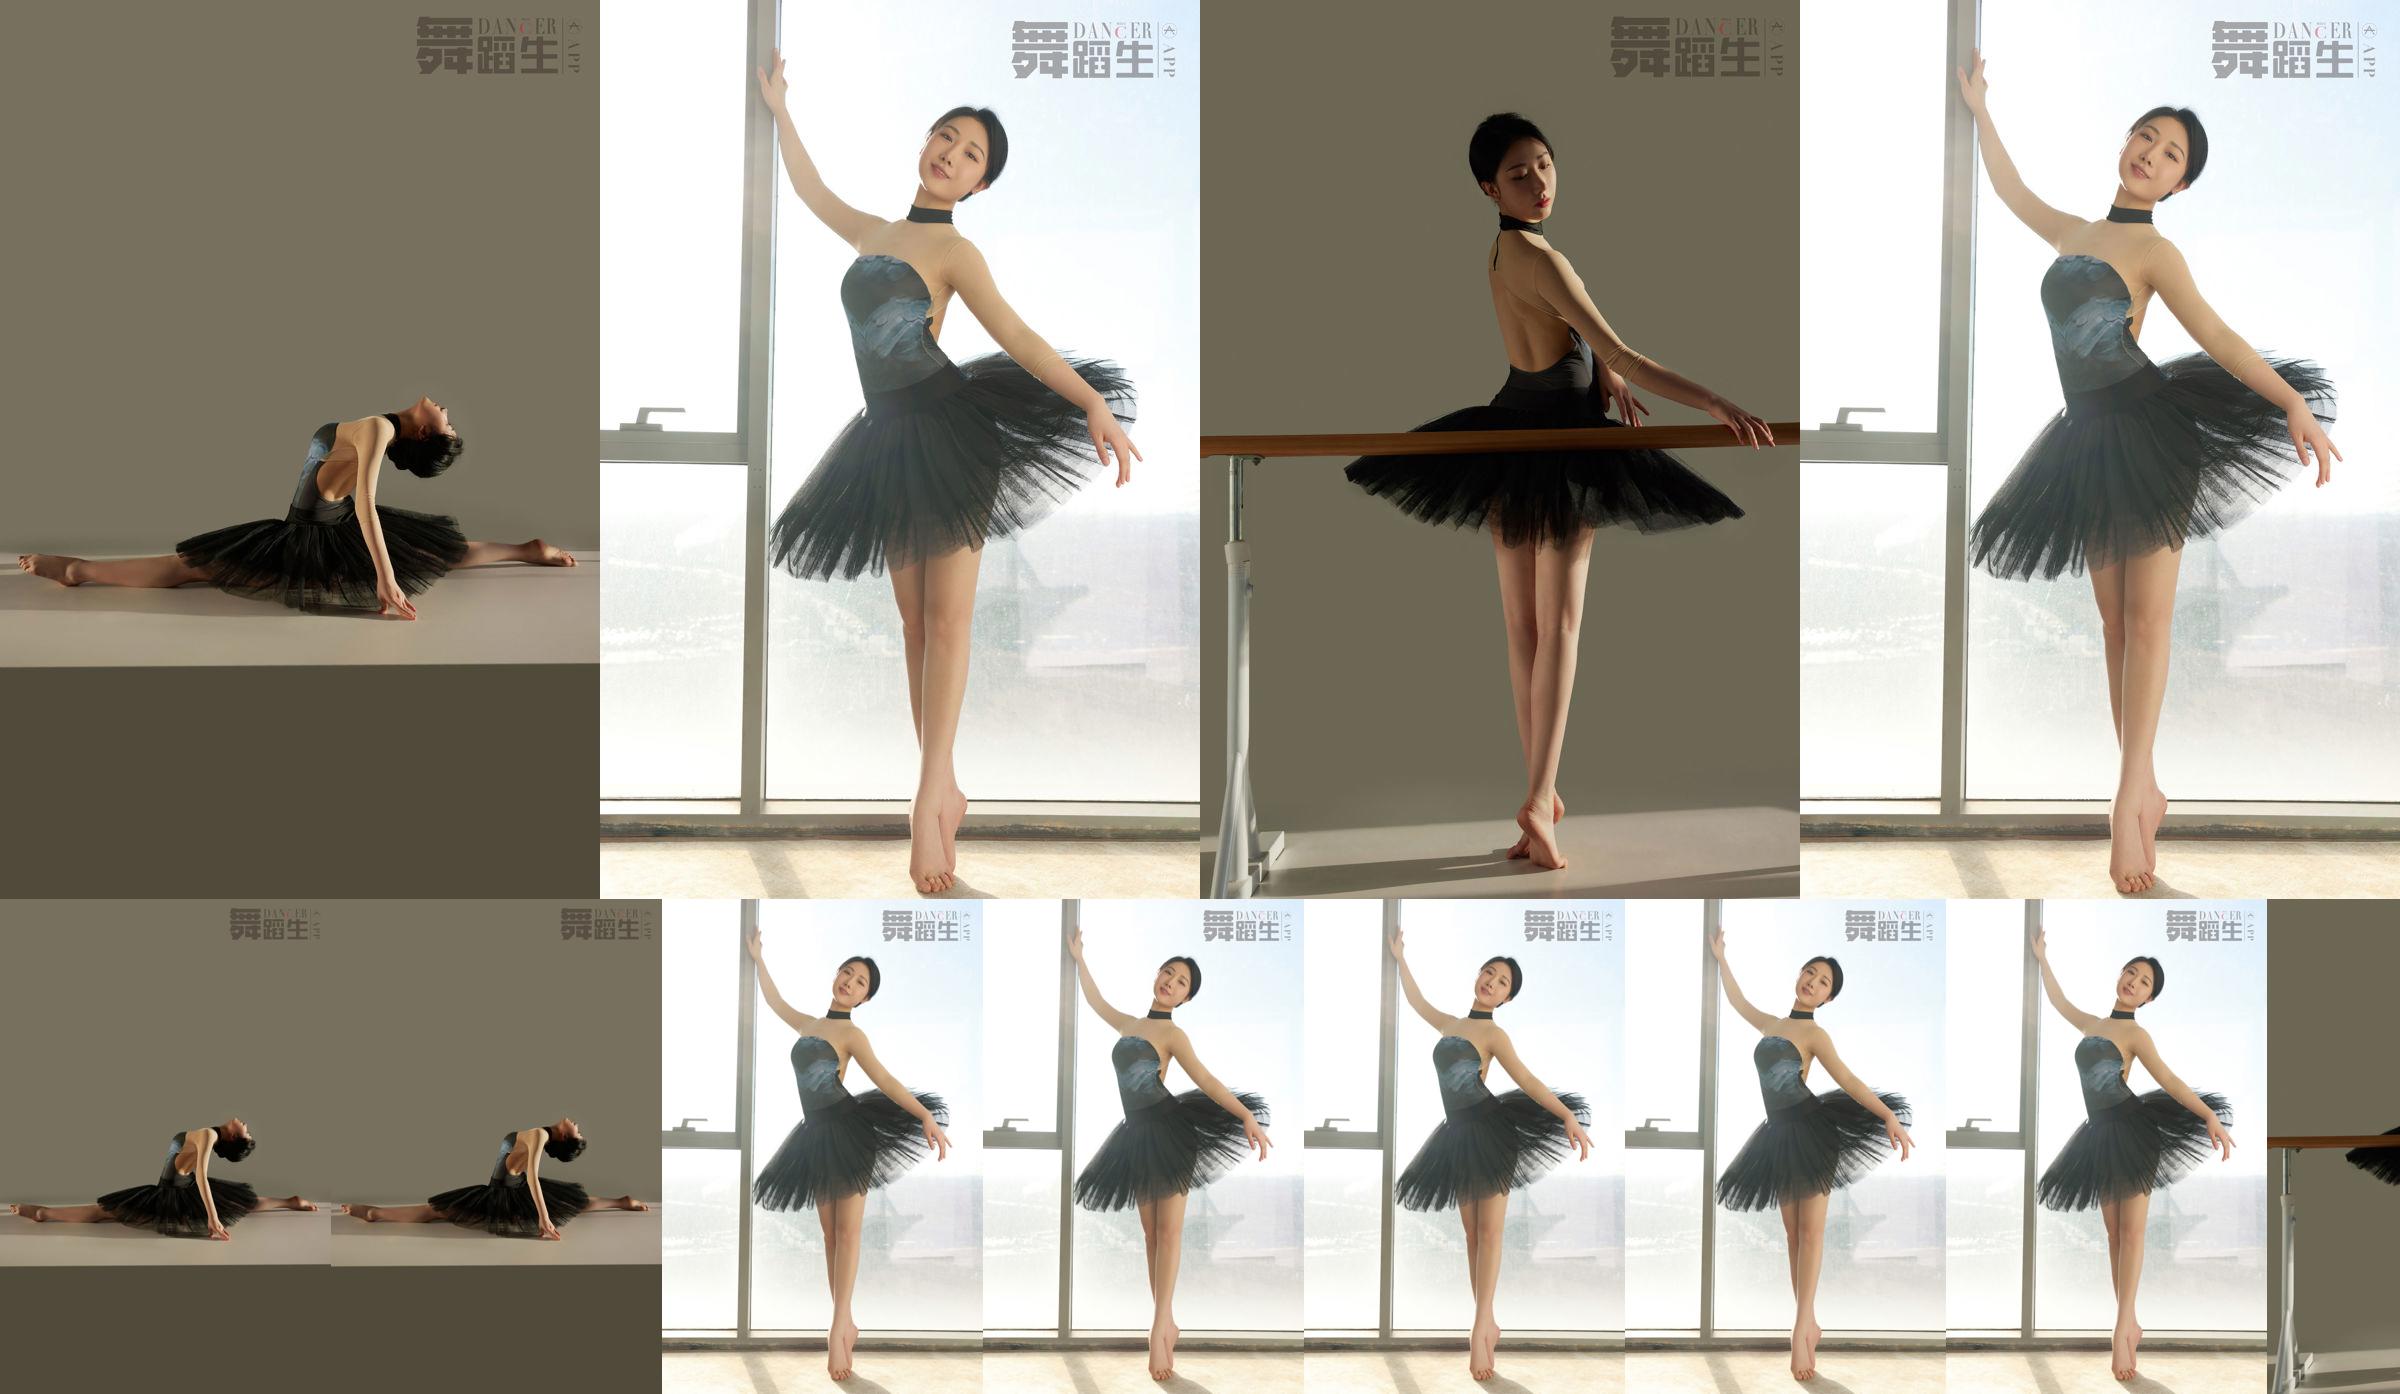 [Carrie Galli] Dagboek van een dansstudent 088 Xue Hui No.63a2aa Pagina 1